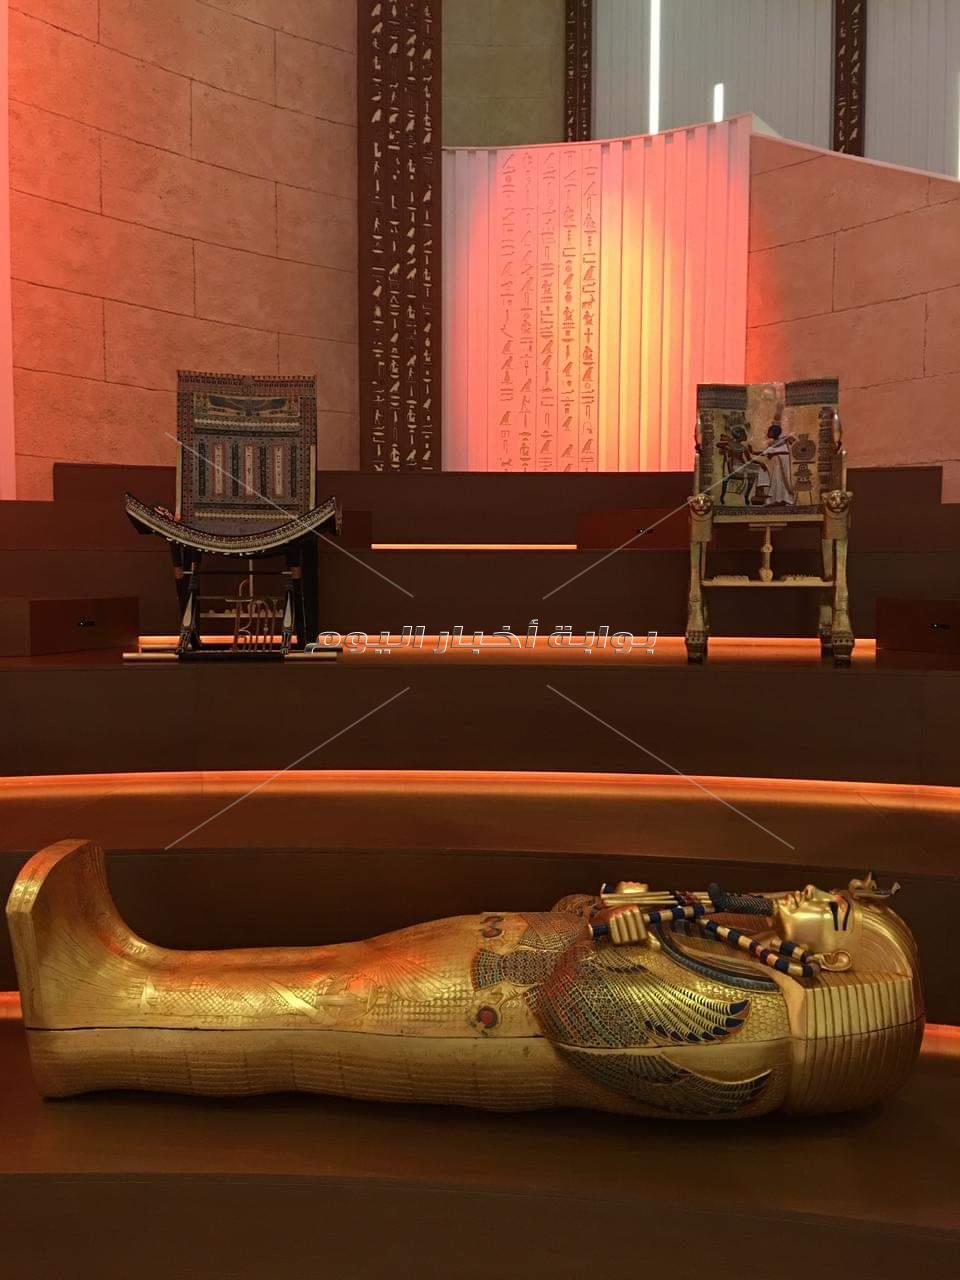 تابوت أثري ومستنسخات في الجناح المصري بمعرض إكسبو دبي 2020